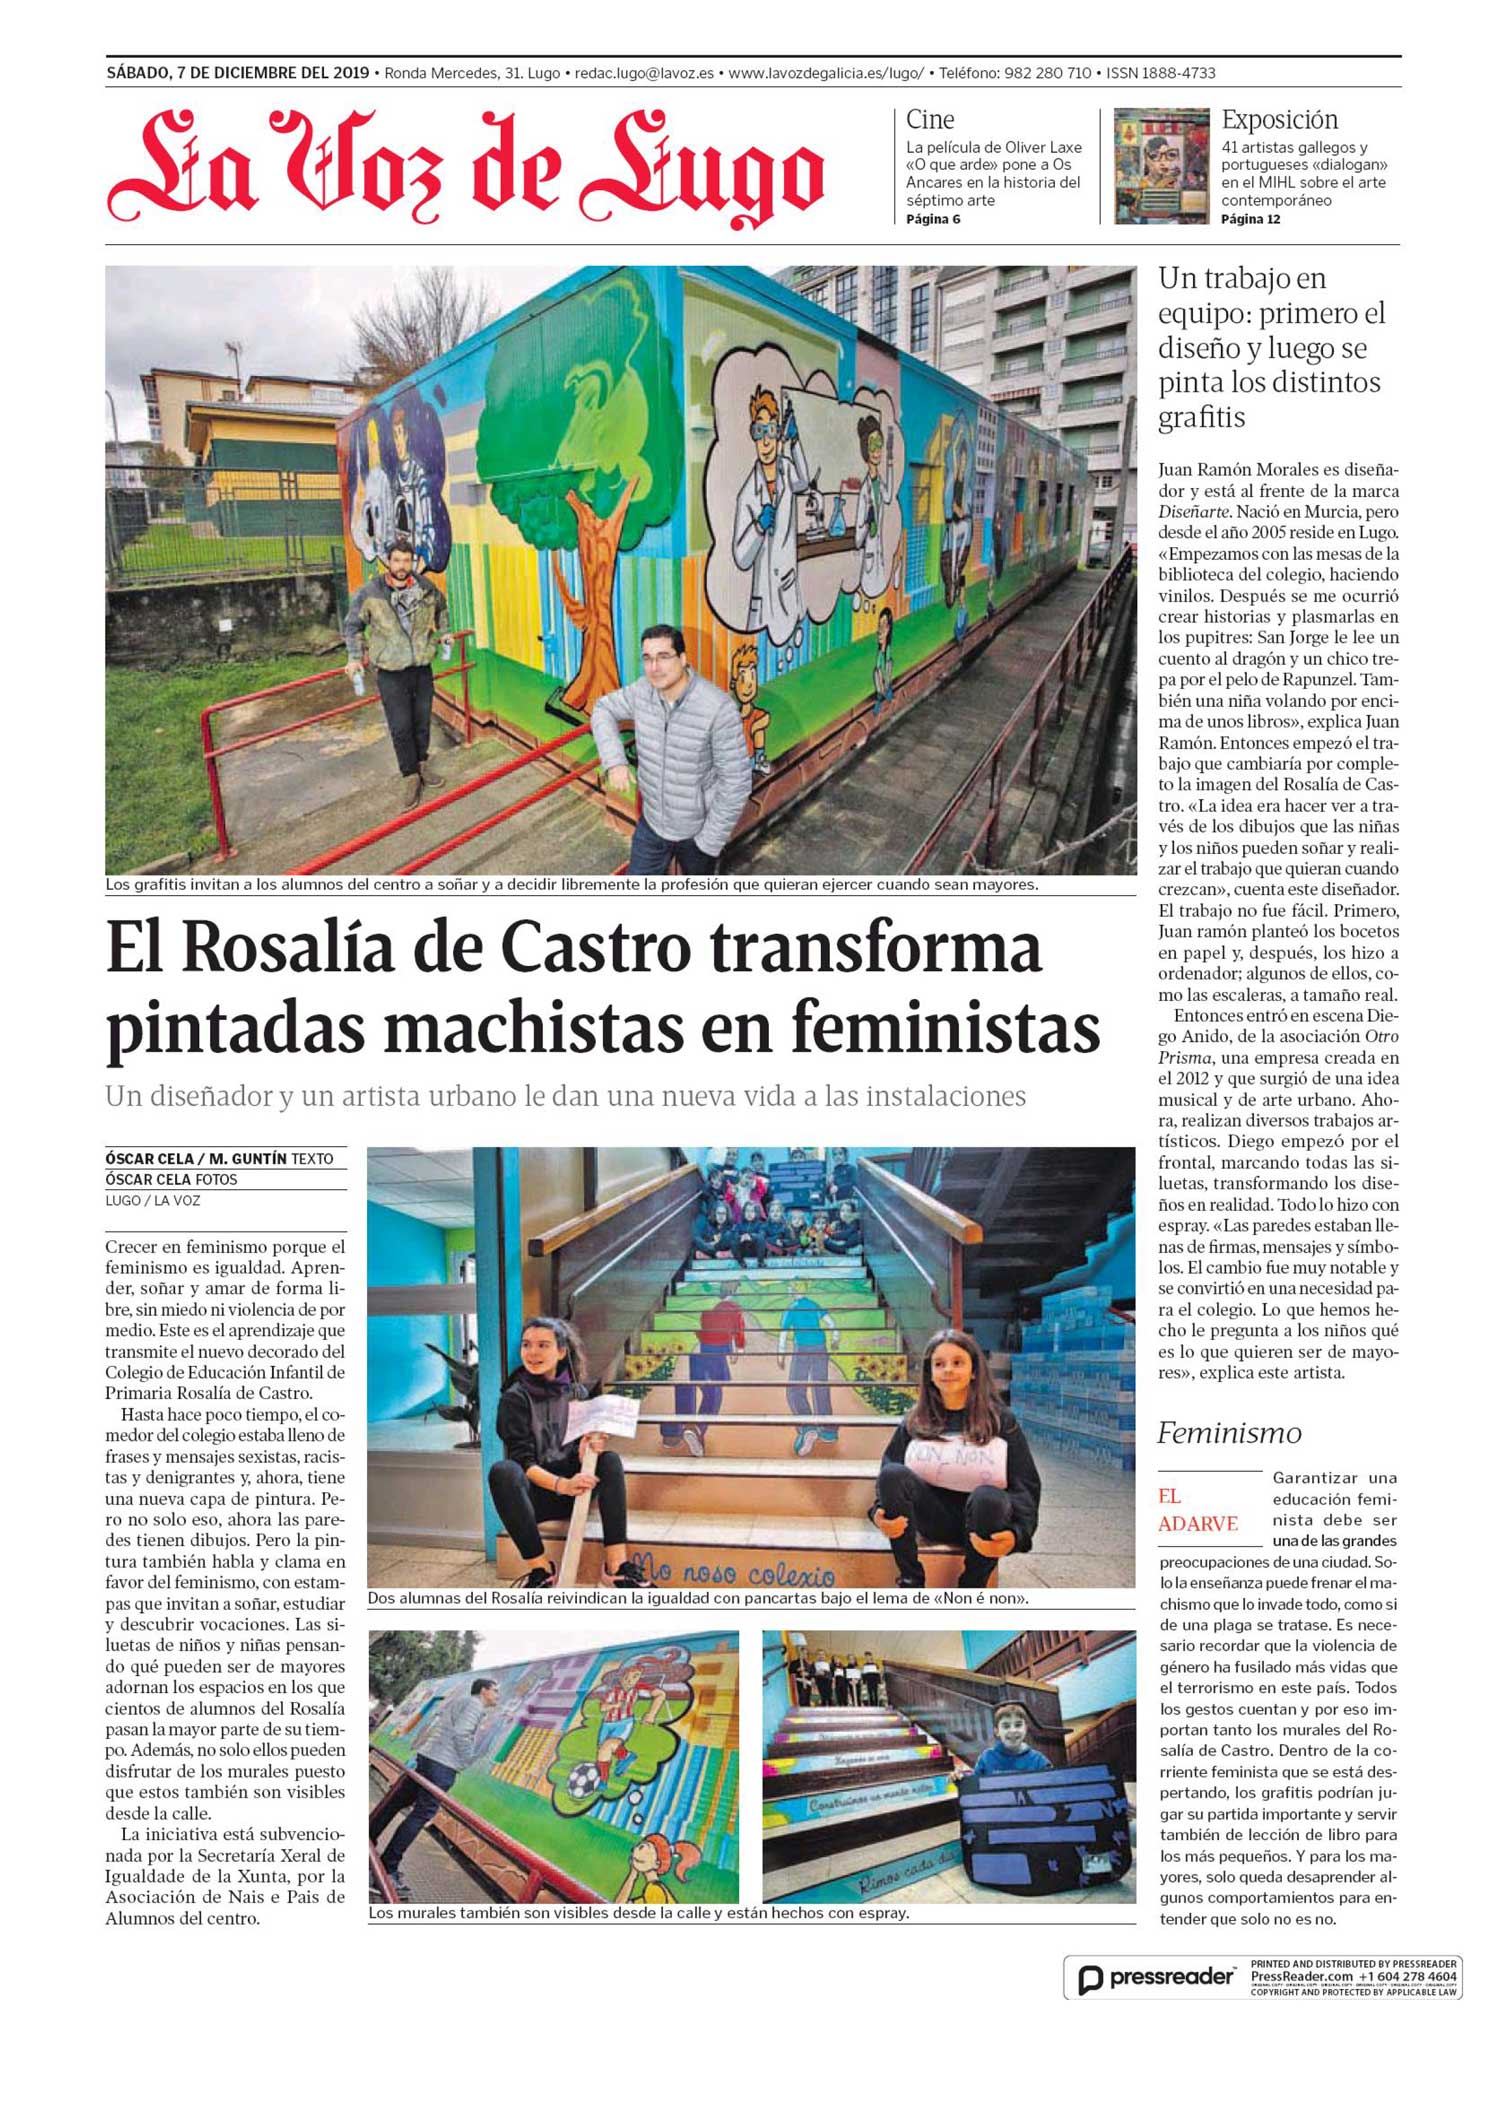 El progreso. El Rosalía de Castro transforma pintadas machistas en feministas